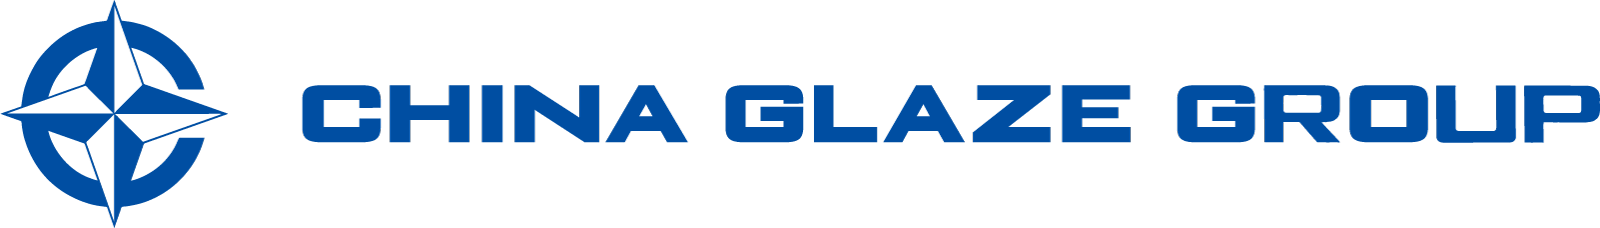 China Glaze Co., Ltd.（和名：チャイナグレーズ株式会社）のお問合せフォームページ。China Glaze Co., Ltd.は台湾本社の特殊ガラス粉末メーカーです。特殊ガラス微粉末、セラミック釉薬、ガラスフリット、ガラスパウダー、ガラス粉末を利用した、LTCC、PiG、顔料、建材、などの材料として研究開発から製造販売をサポートします。2022年5月に日本窓口としてChina Glaze Co., Ltd.（和名：チャイナグレーズ株式会社） 東京デスクを設立しました。